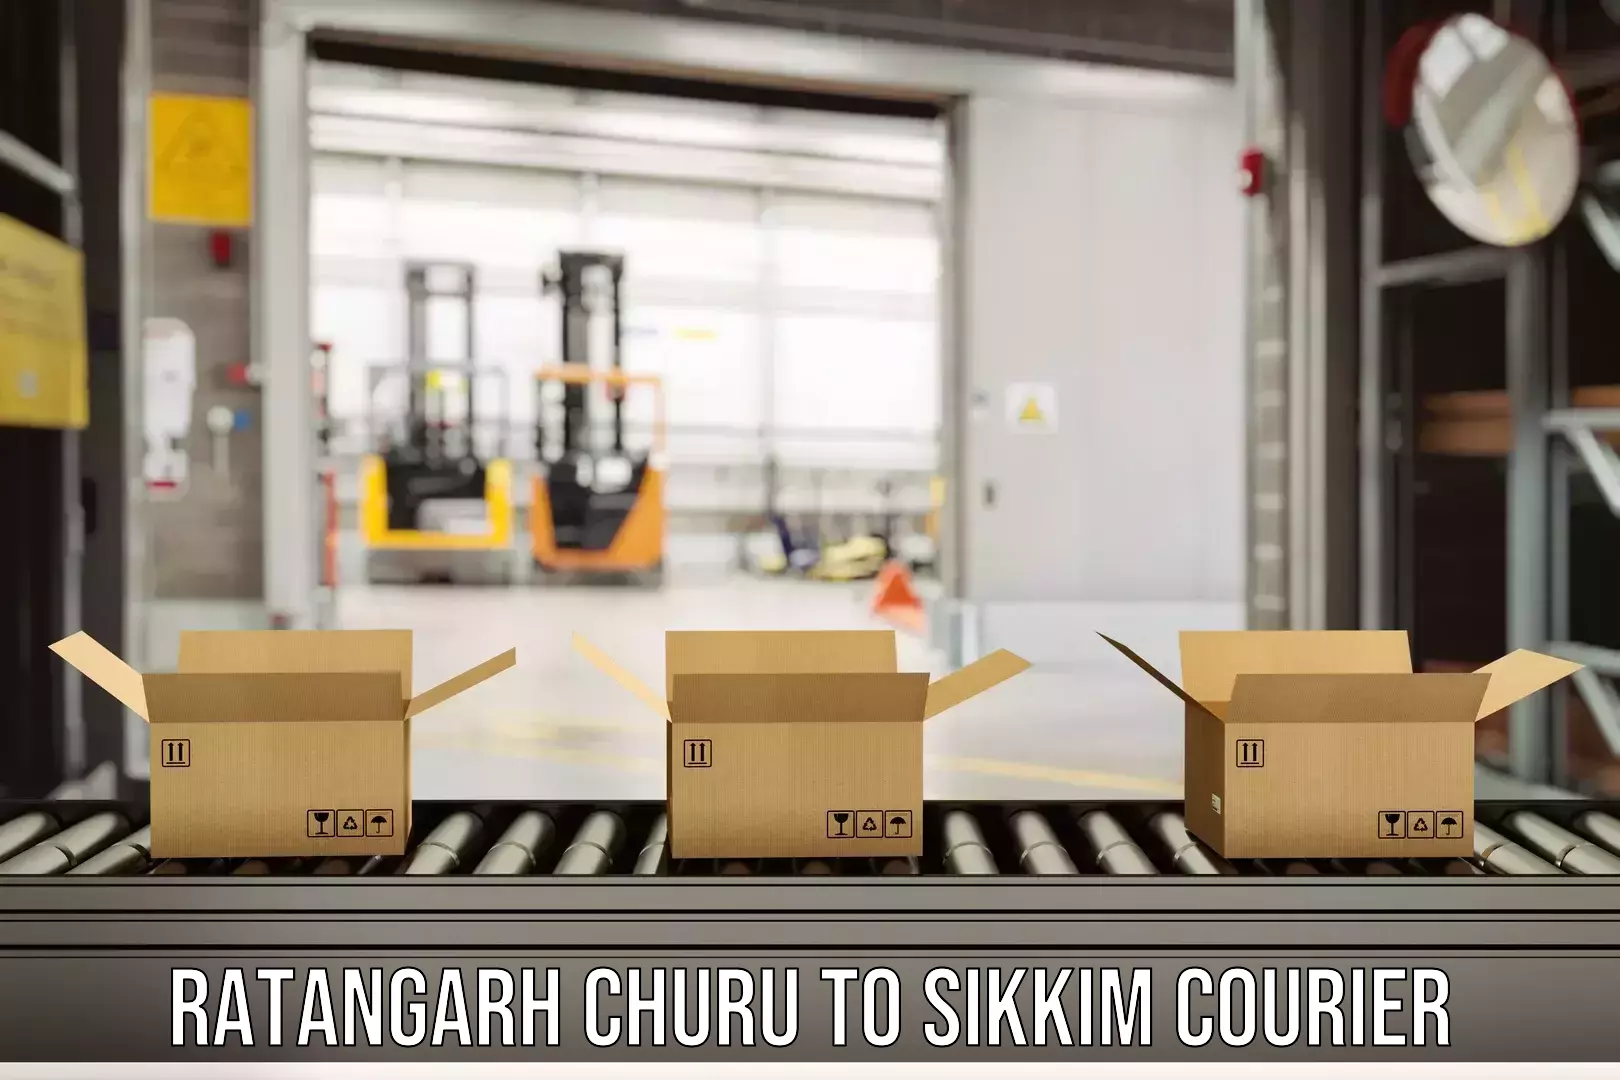 Urgent courier needs Ratangarh Churu to NIT Sikkim